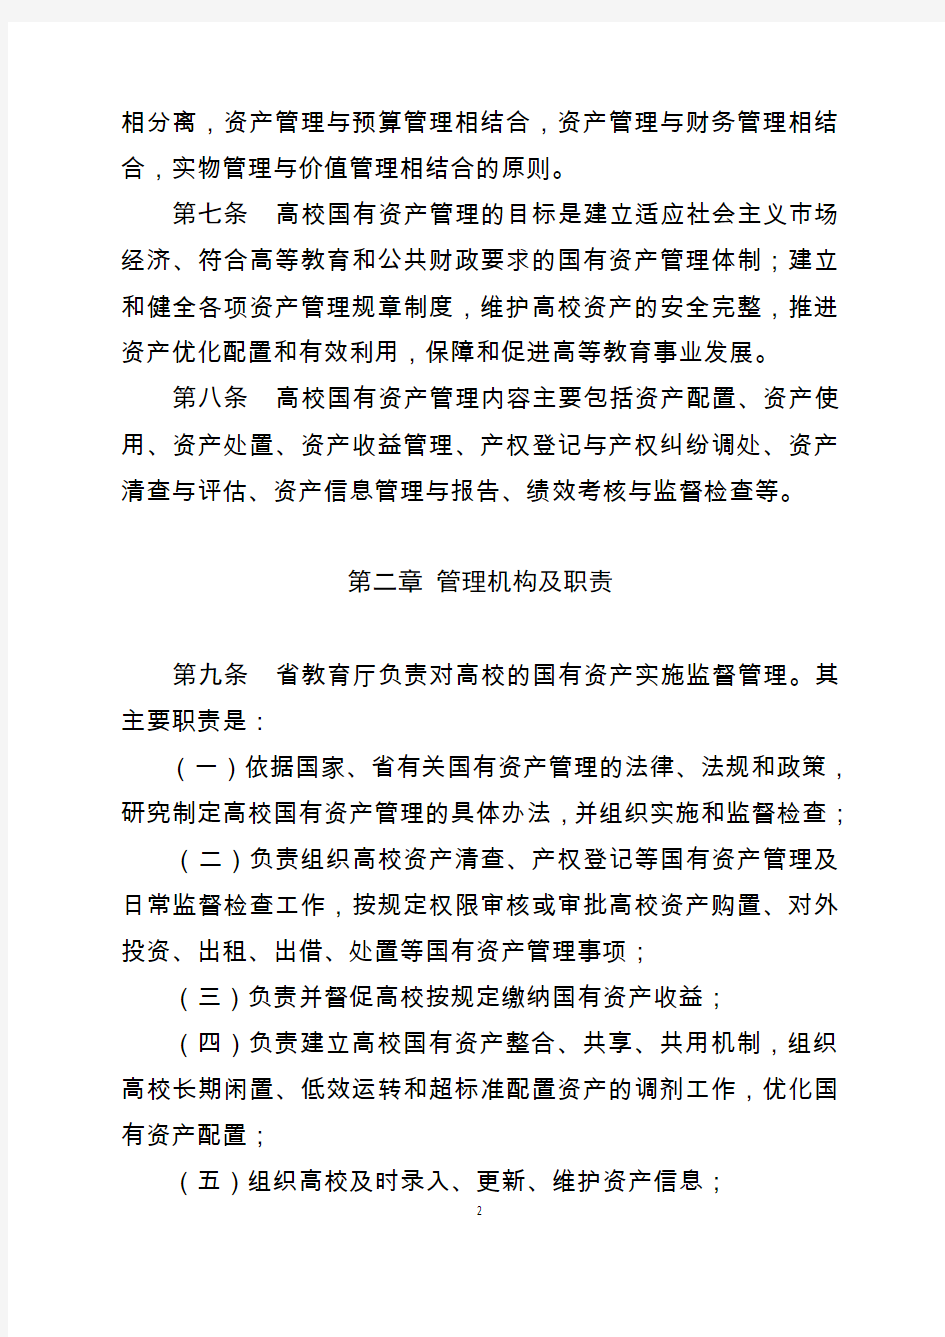 河北省高等学校国有资产管理暂行办法-国有资产管理处